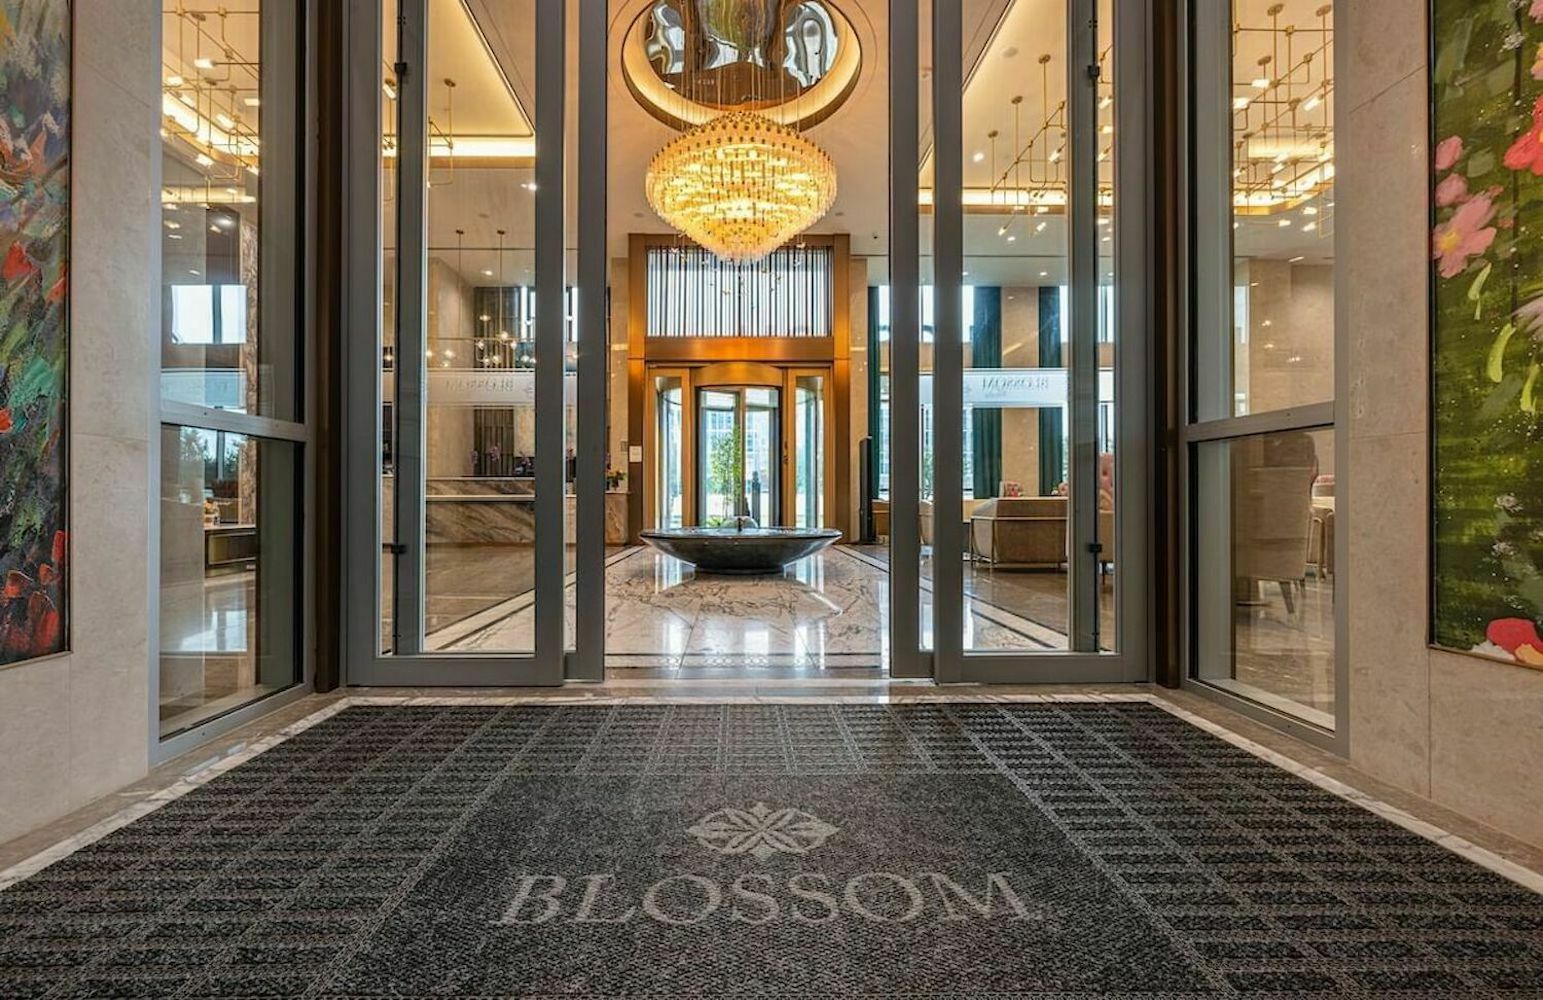 Photo of Blossom Hotel Houston, Houston, TX